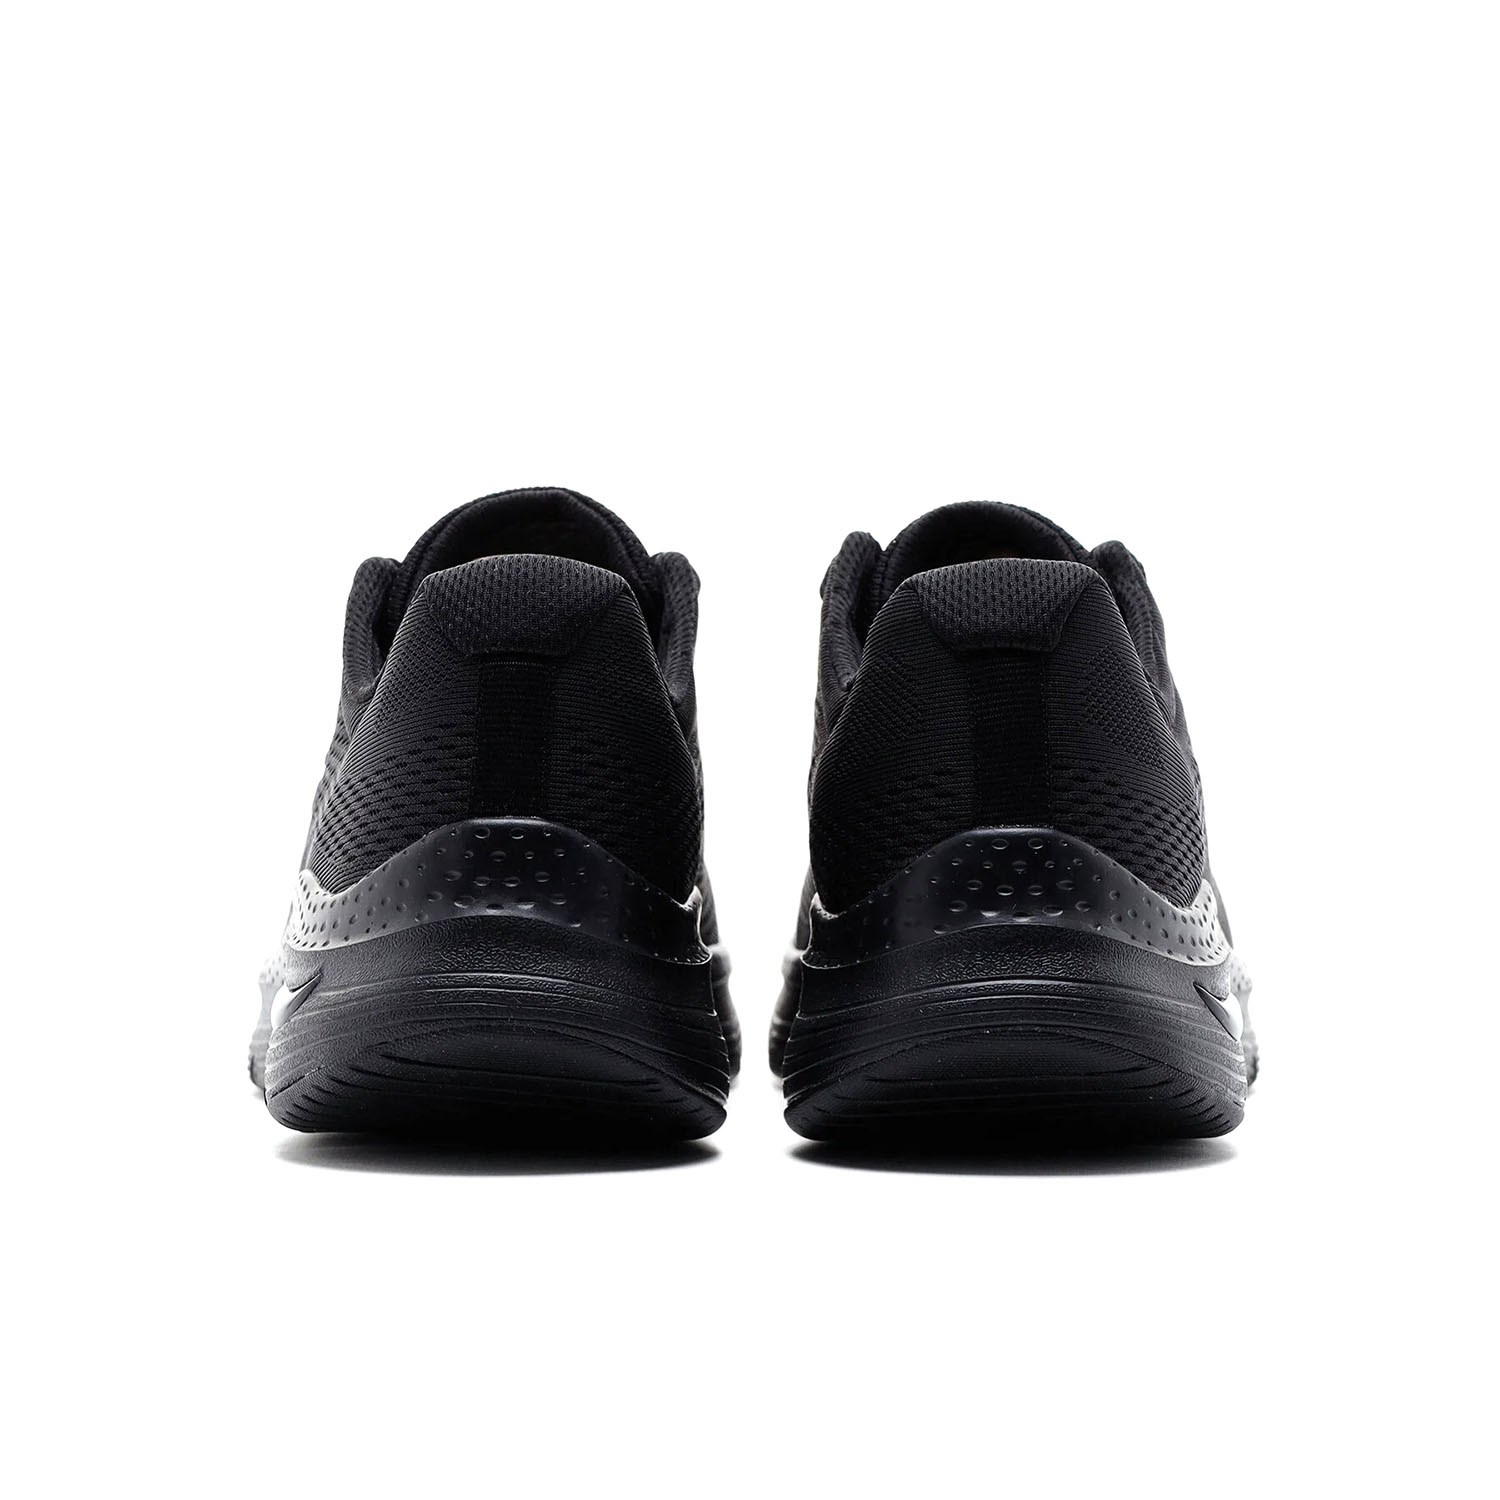 Skechers Arch Fit Erkek Günlük Spor Ayakkabı Siyah